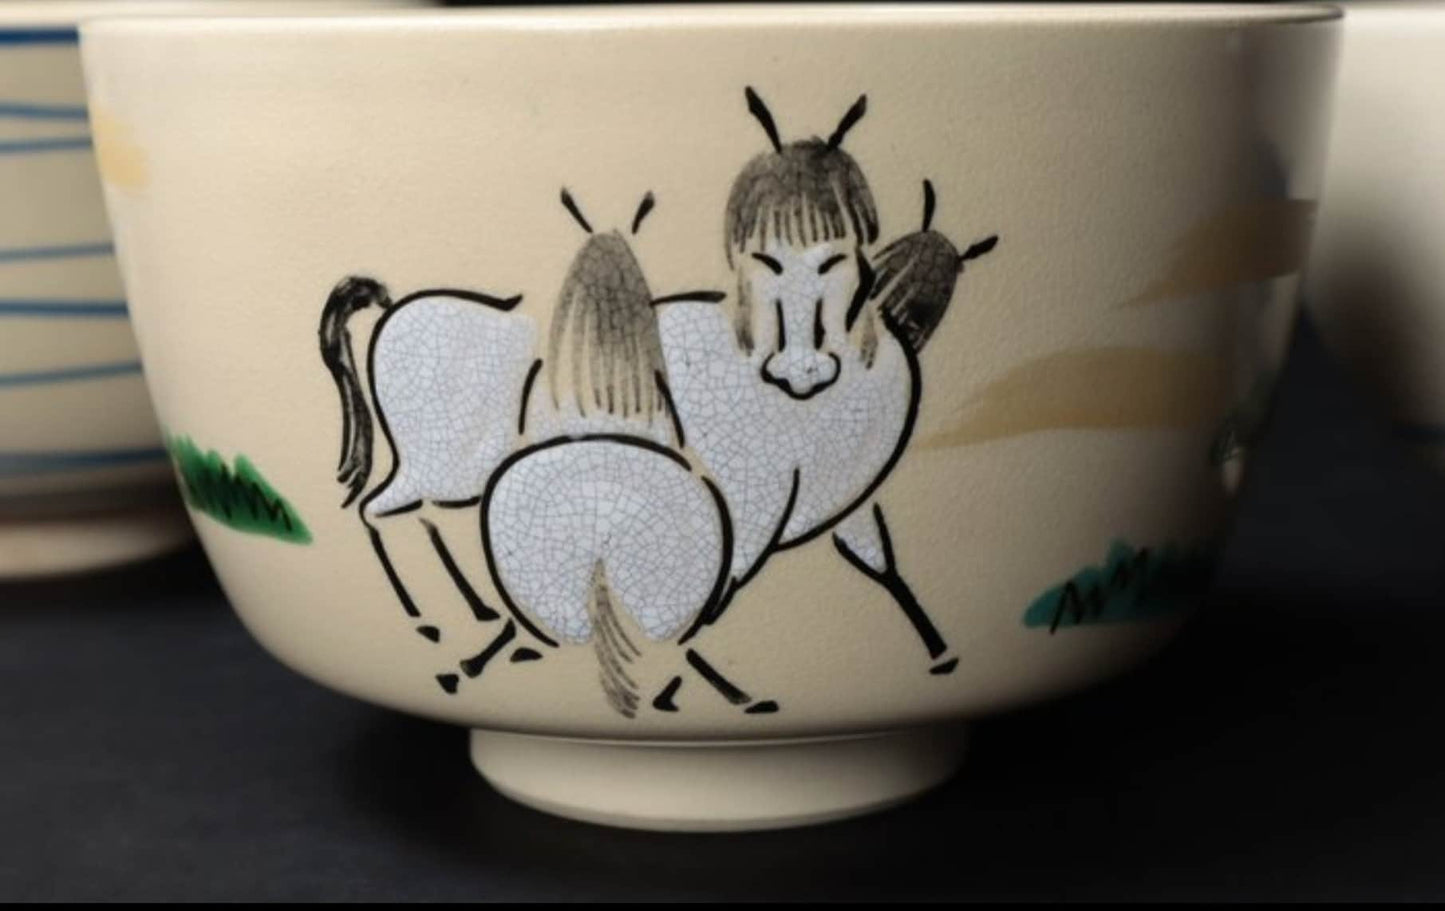 Chawan Pottery • 3 • Tea Ceremony Tools • Kyo-yaki (京焼) Teacups • Zodiac - Horse • Japan  20th century